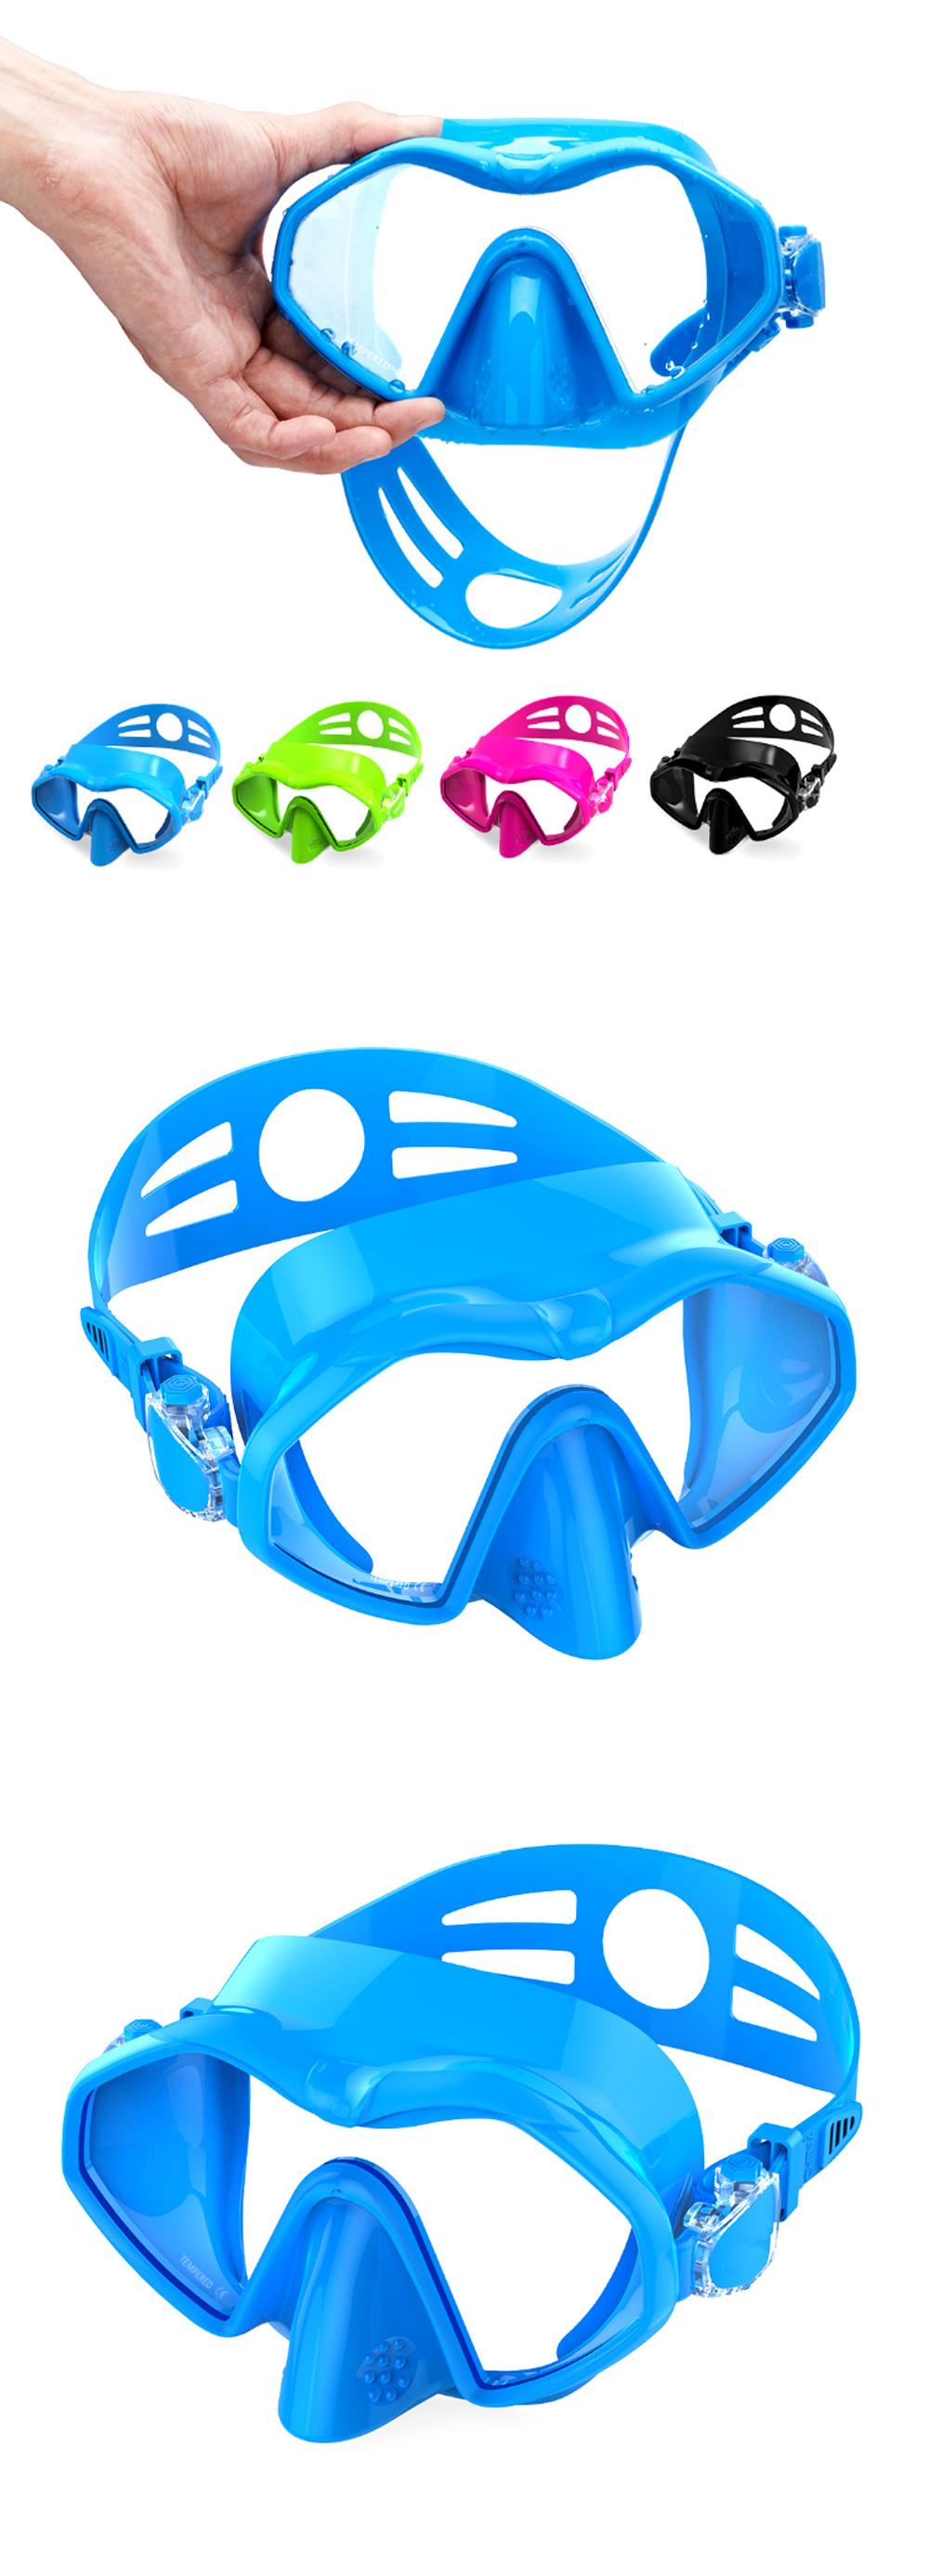 HhaoSport-M6113-Diving-Mask-Snorkel-Mask-Adjustable-Silicone-Free-Diving-Anti-Leak-Anti-Fog-Diving-G-1717466-2